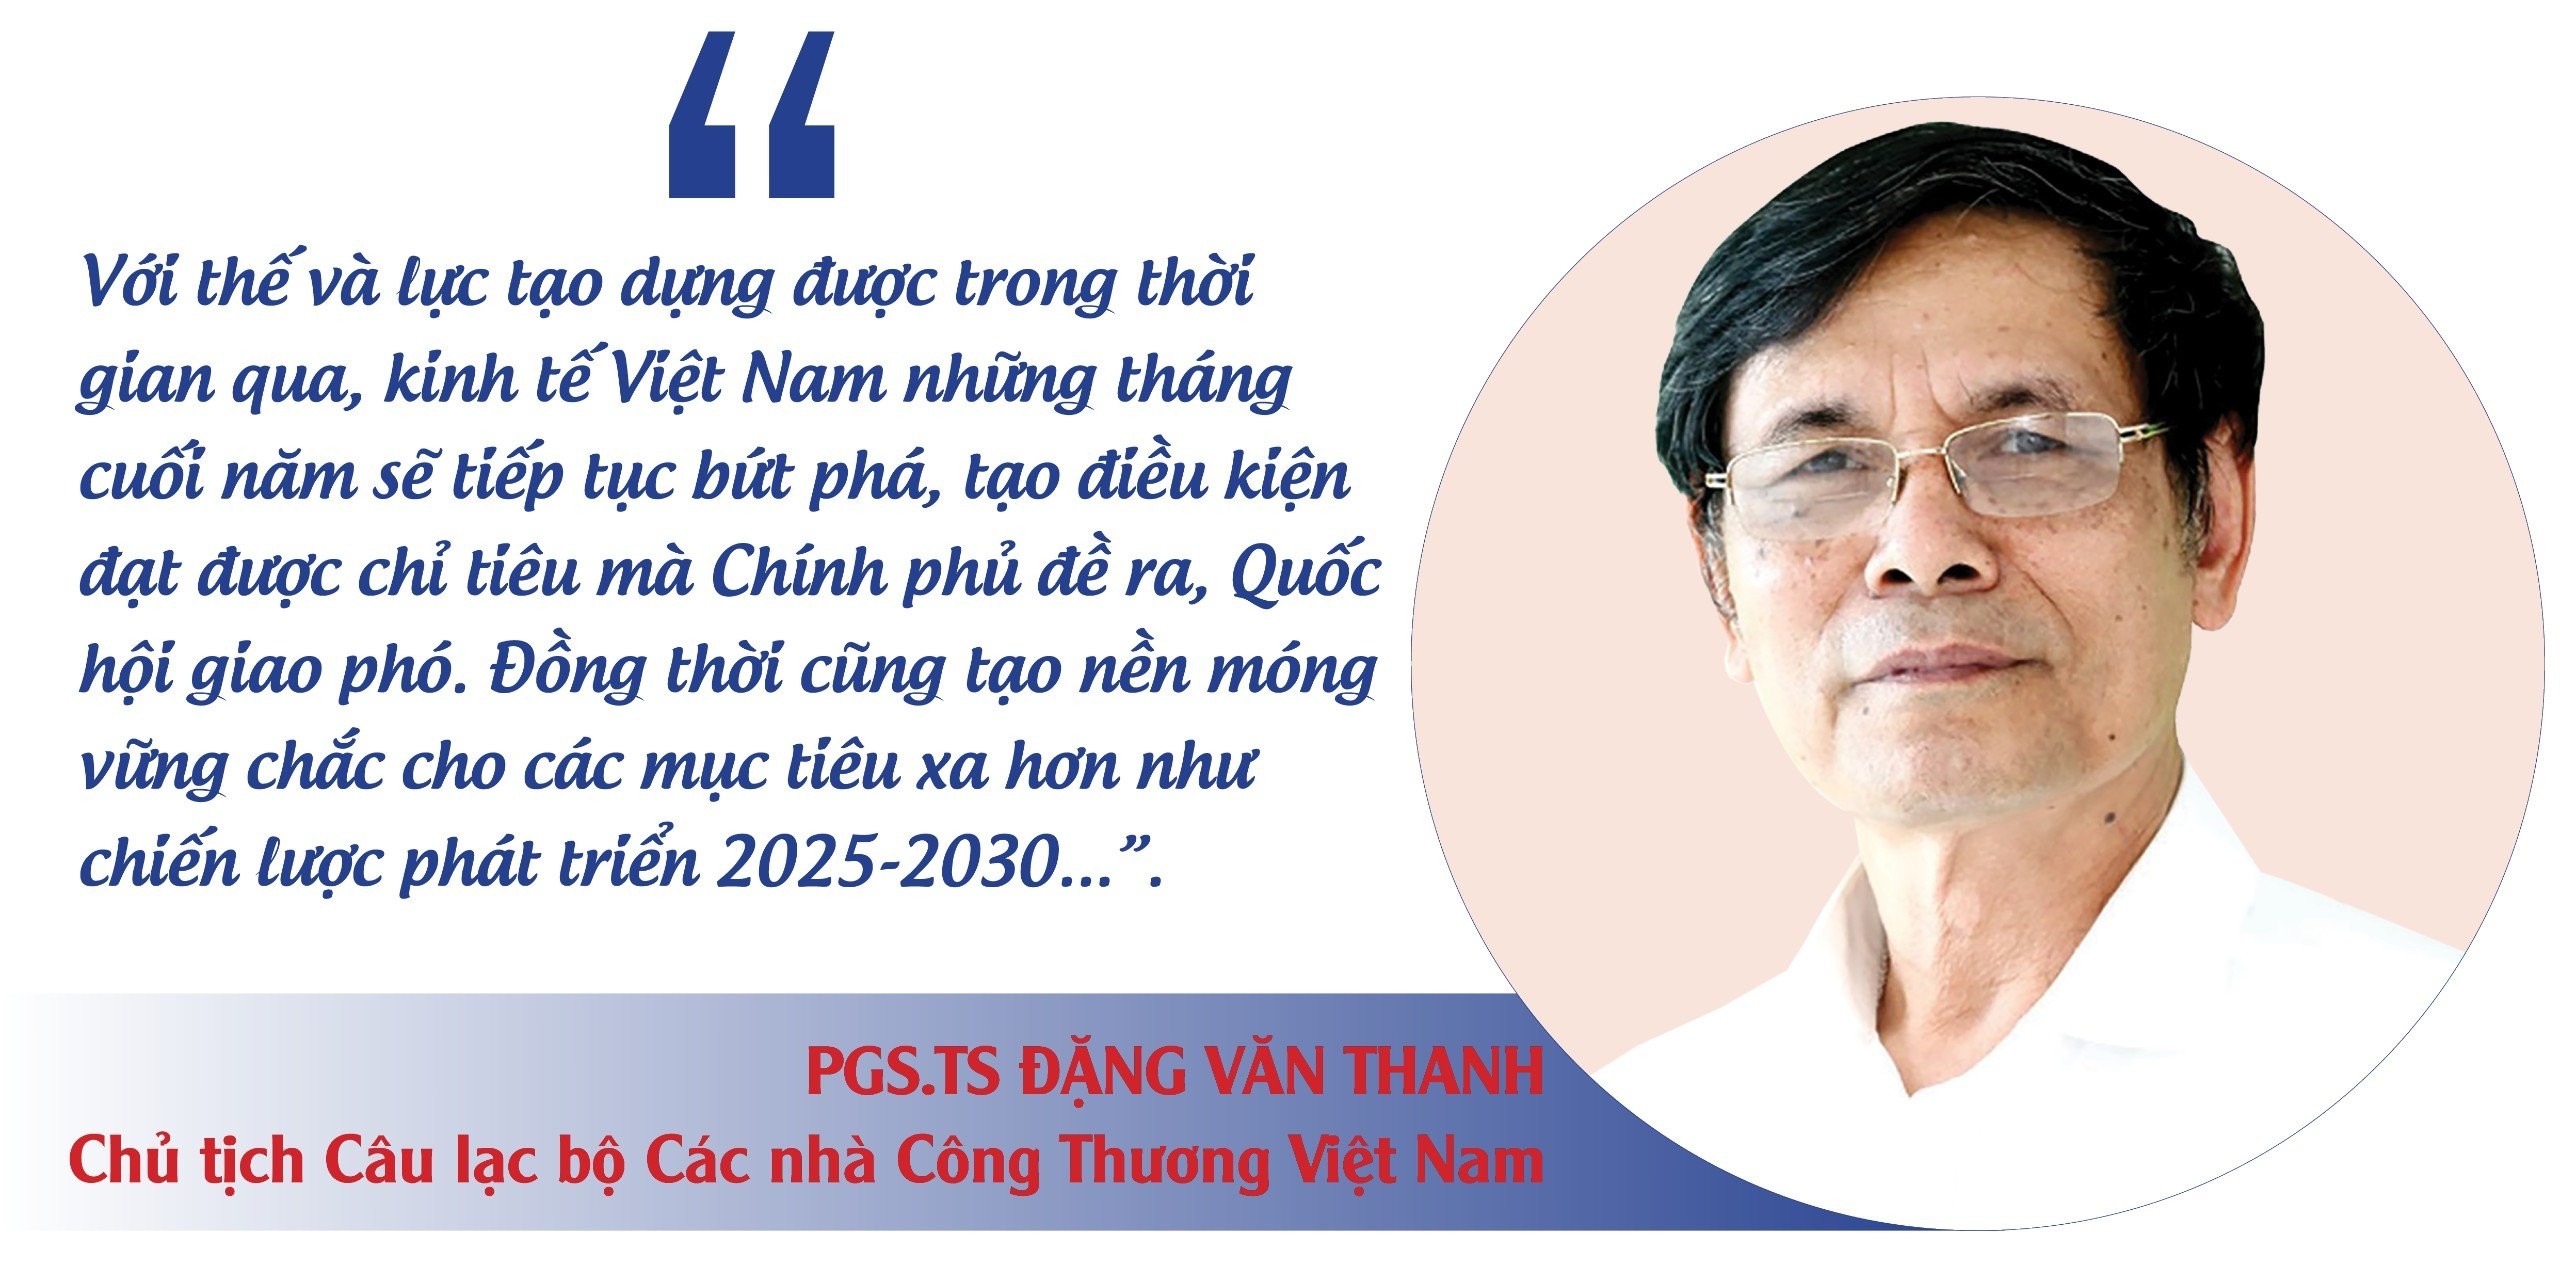 Doanh nhân Việt Nam tự hào với những đóng góp vì một nền kinh tế vững vàng, thịnh vượng